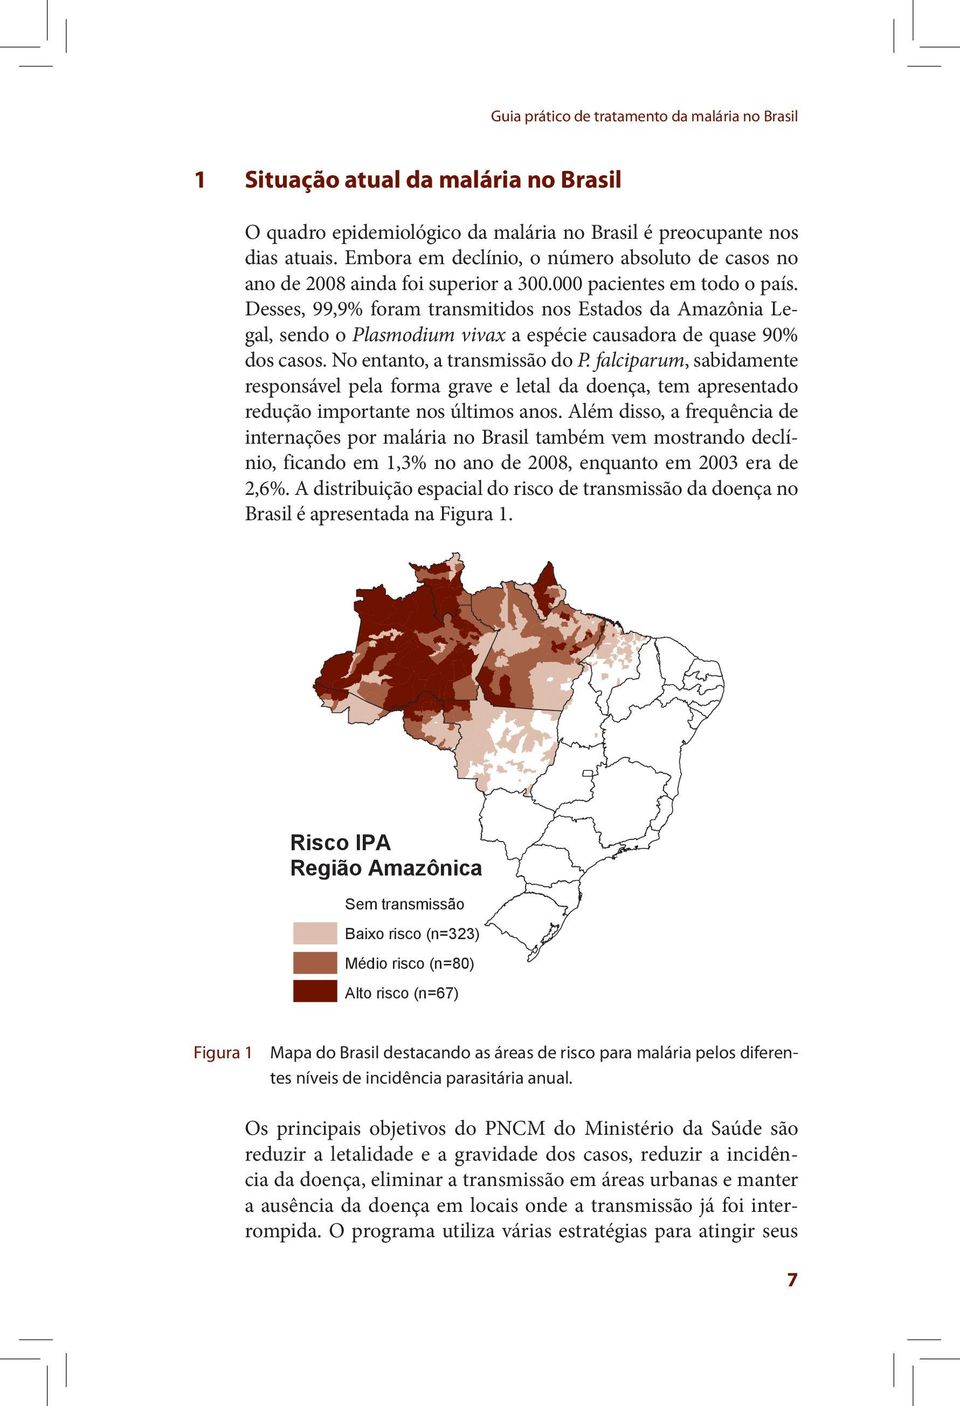 Desses, 99,9% foram transmitidos nos Estados da Amazônia Legal, sendo o Plasmodium vivax a espécie causadora de quase 90% dos casos. No entanto, a transmissão do P.